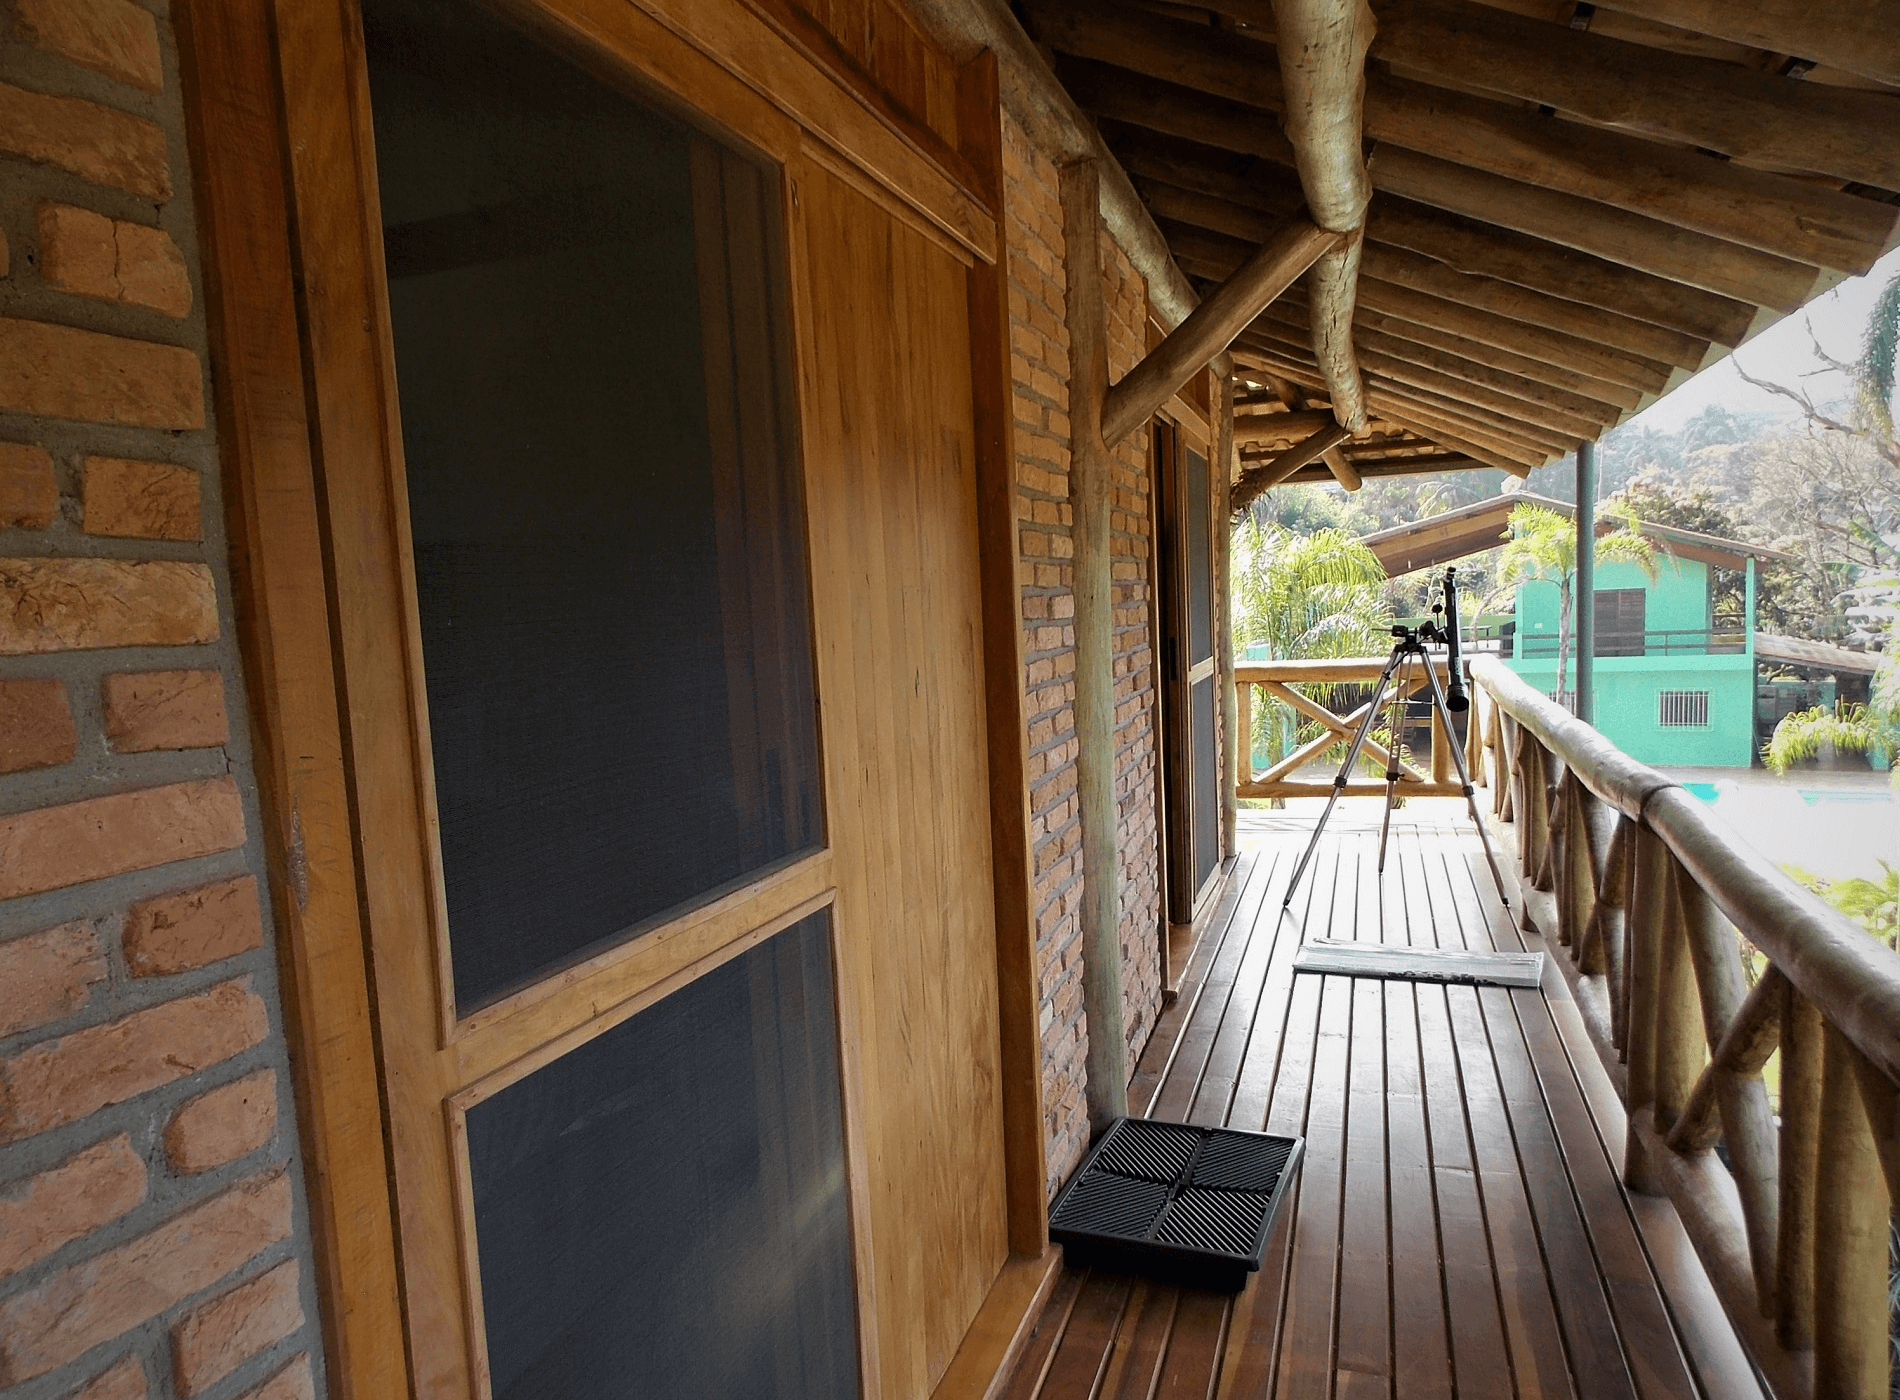 Na Área Intima os dormitórios se abrem para a Natureza com o uso das Varandas. As toras de eucalipto tratado estão presentes na estrutura do telhado, estrutura e guarda corpo da varandas. No piso, deck de Cumaru.